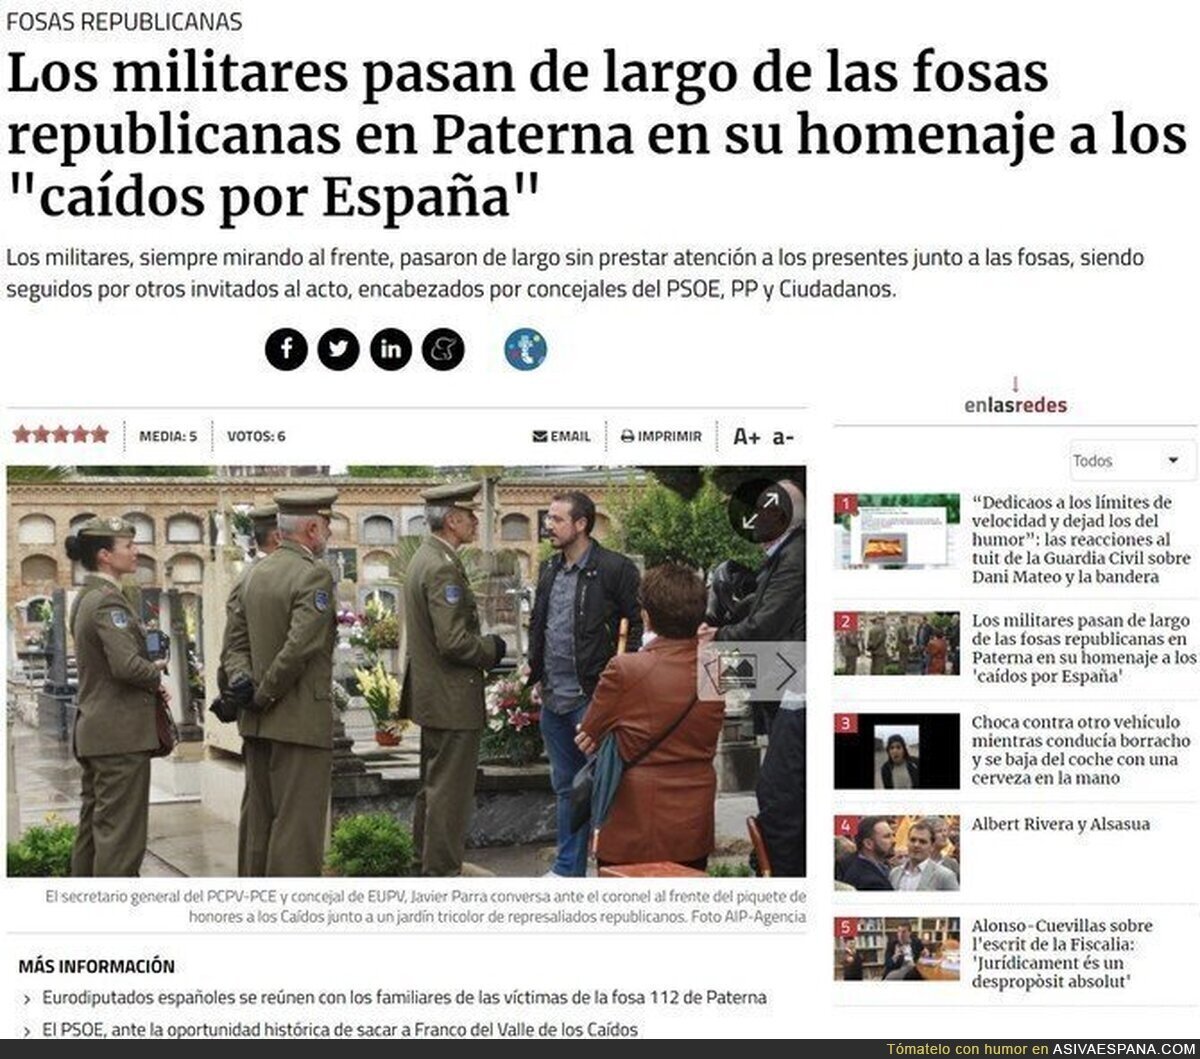 El ejercito ignora a los verdaderos "caidos por España"